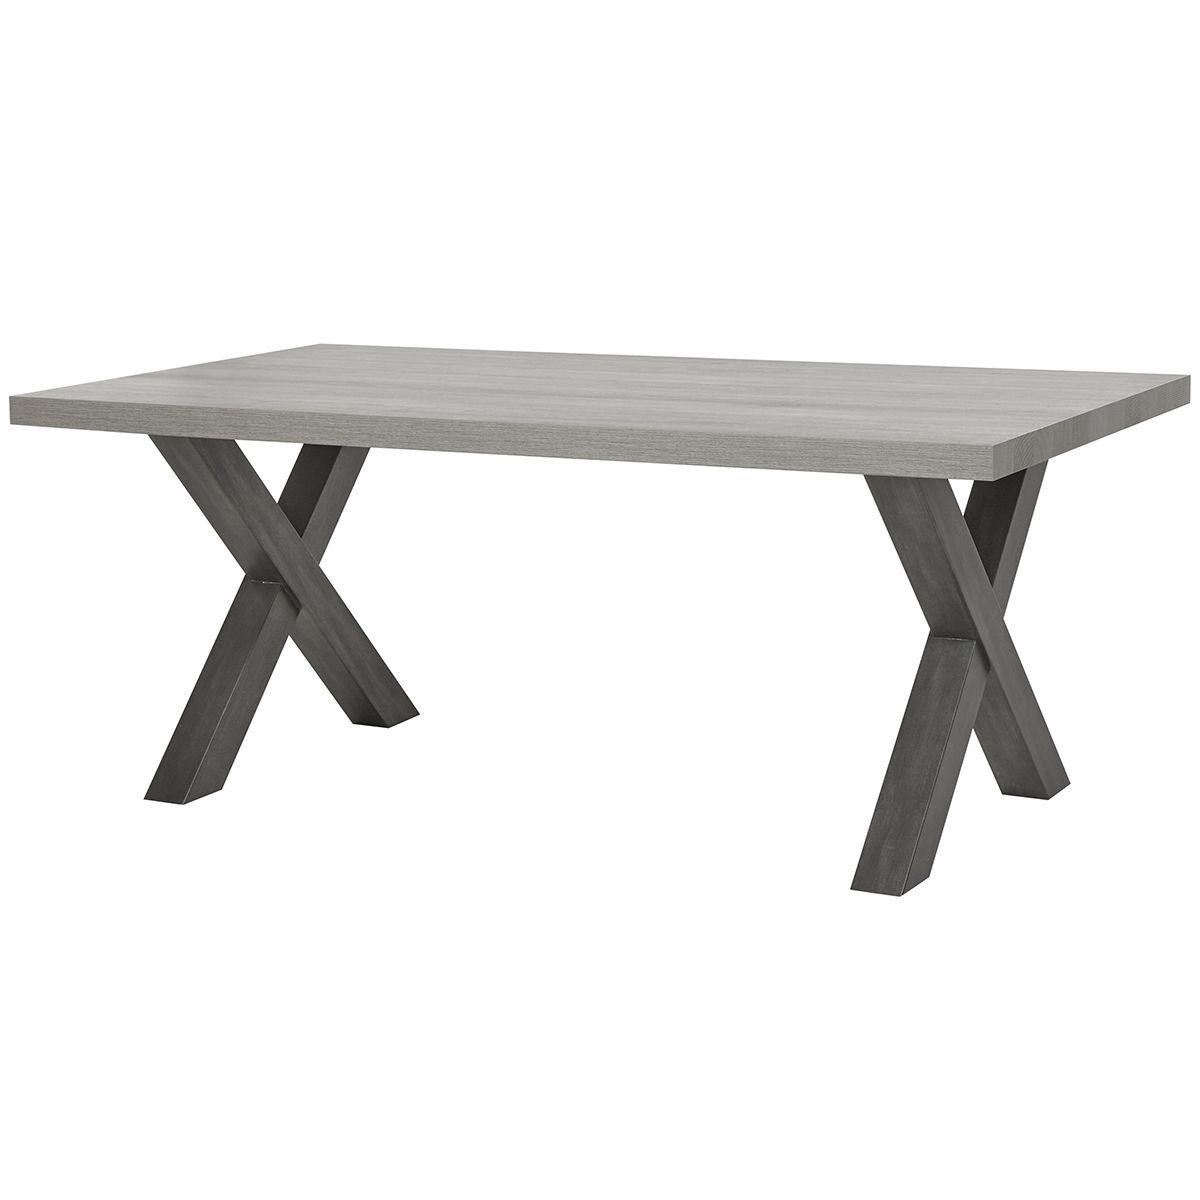 Altobuy - MATTHEW - Table Rectangulaire 185cm - Tables à manger